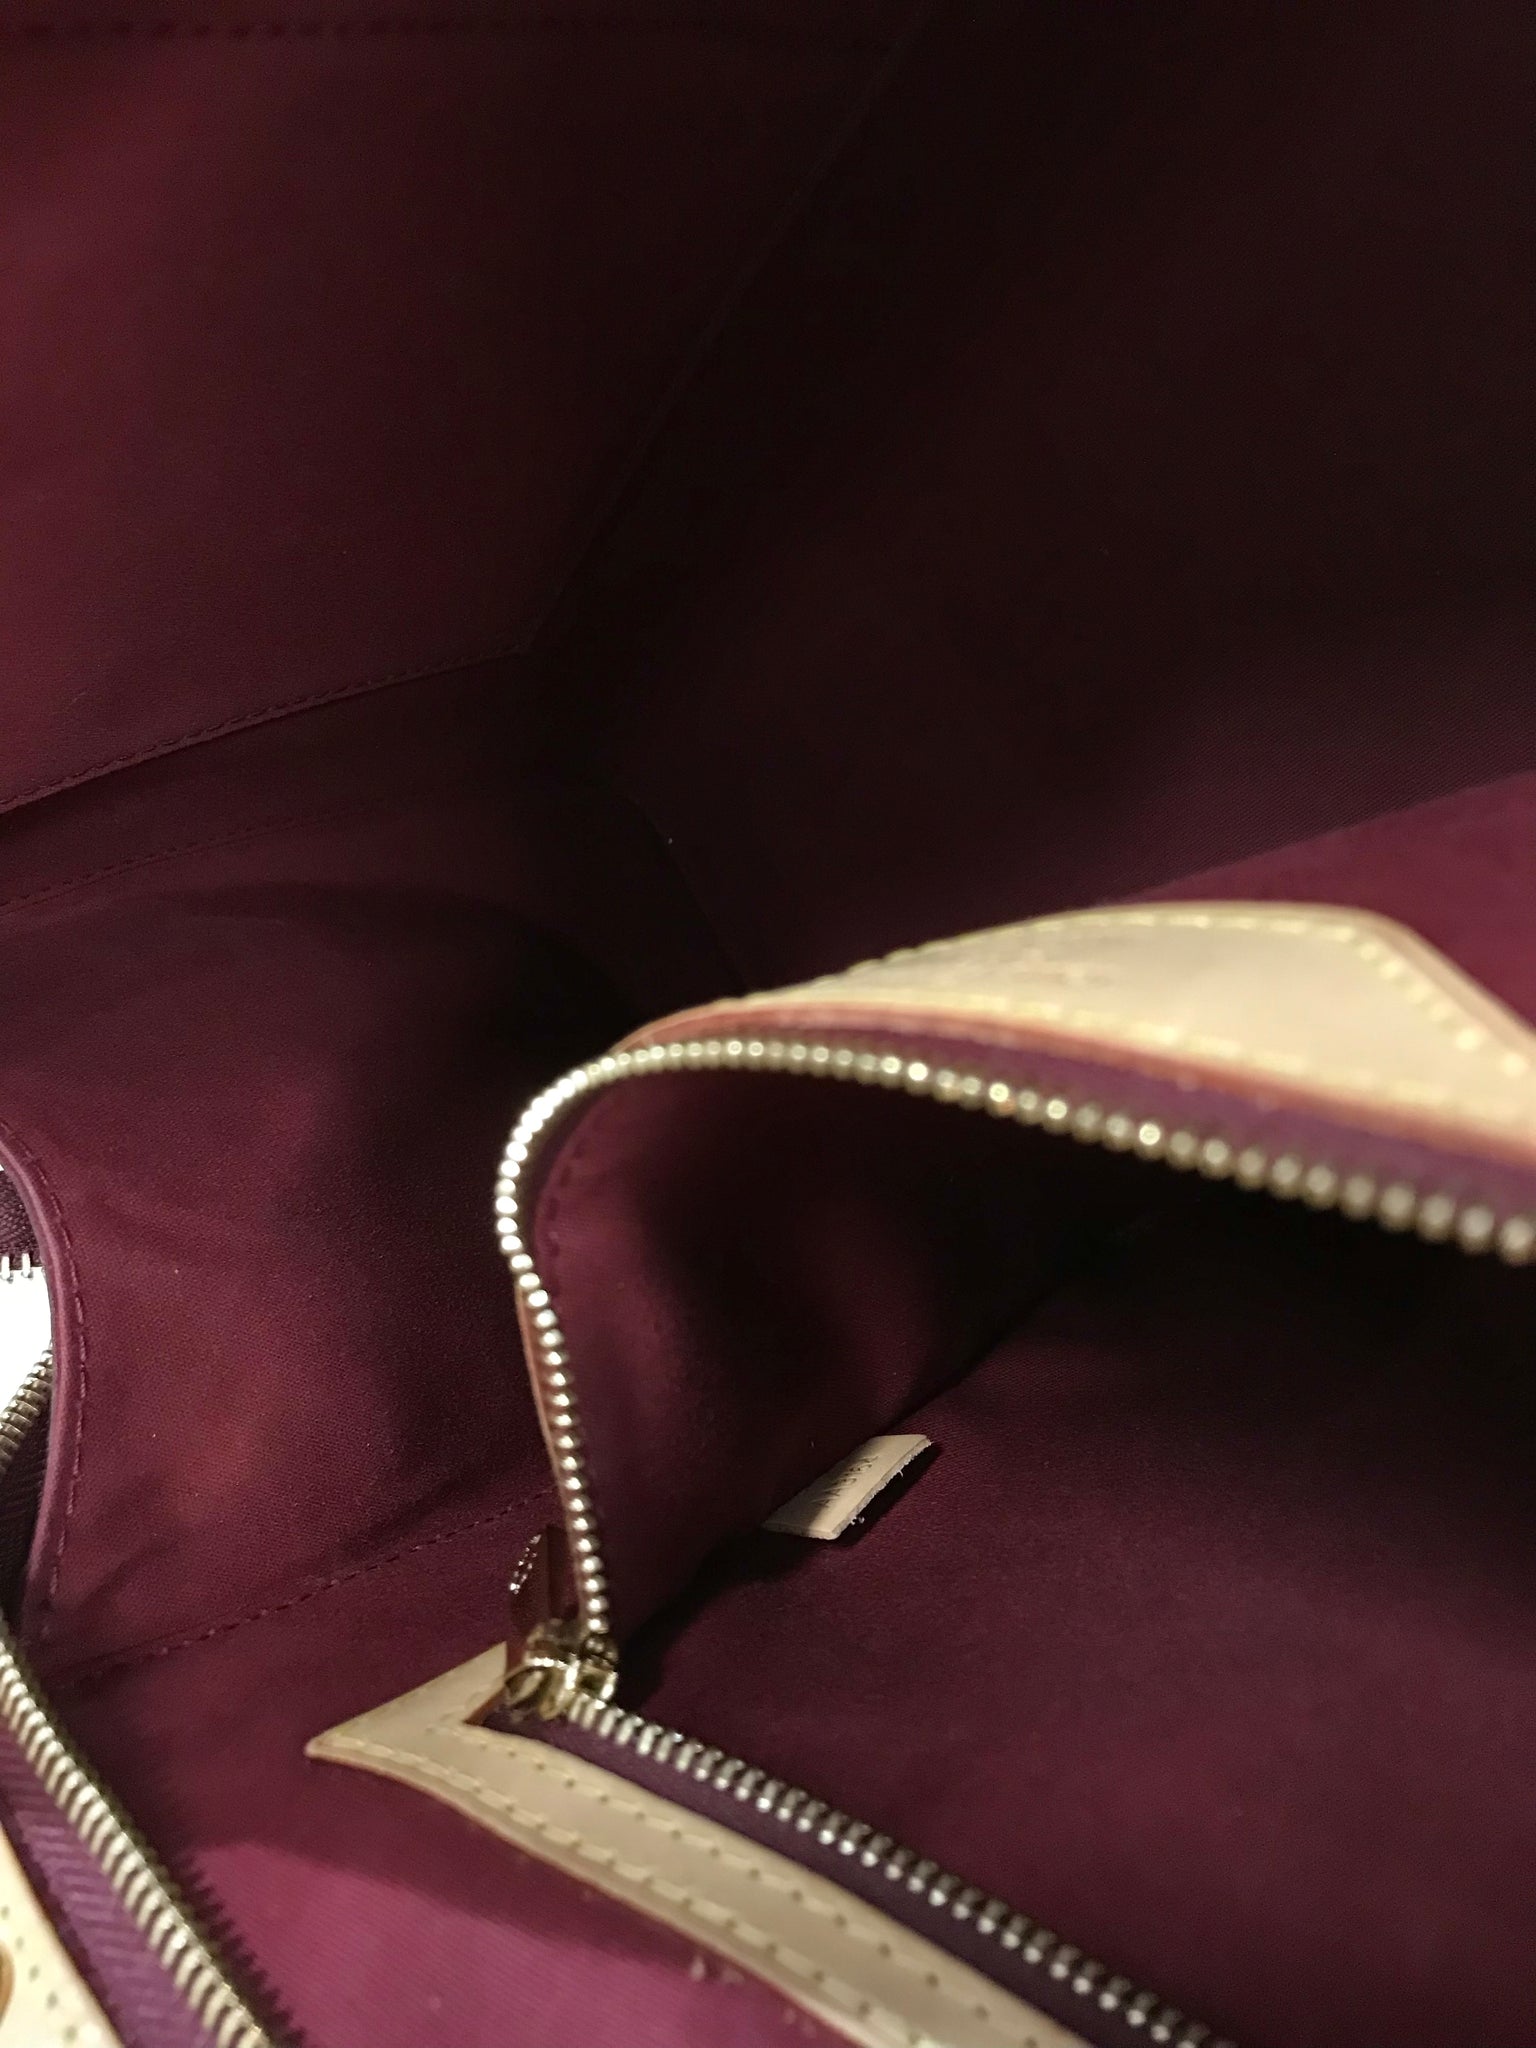 Louis Vuitton Brea Handbag 387529